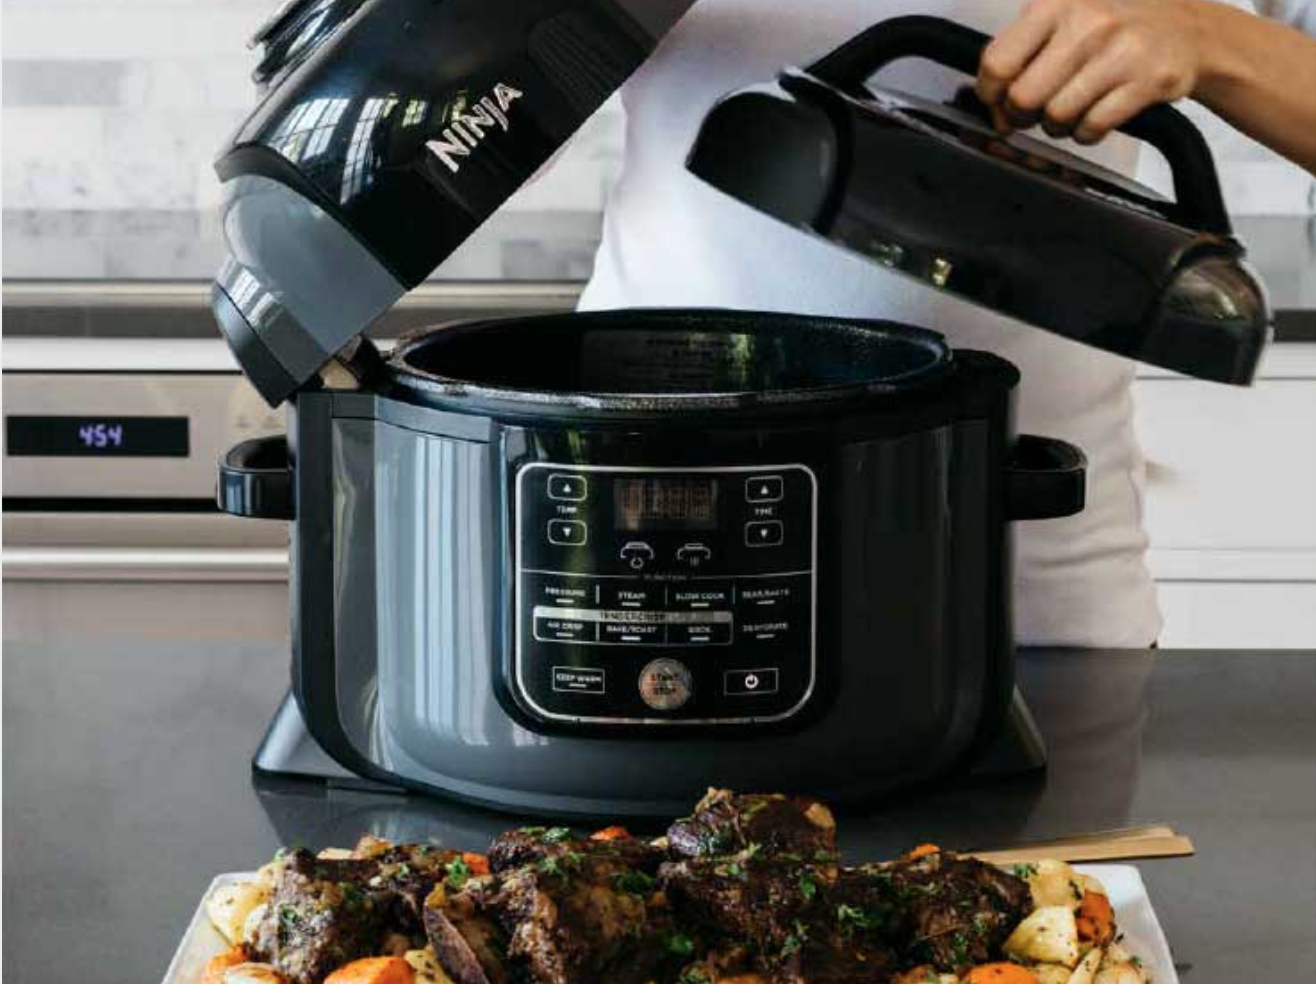 The Ninja Foodi pressure cooker is on sale at